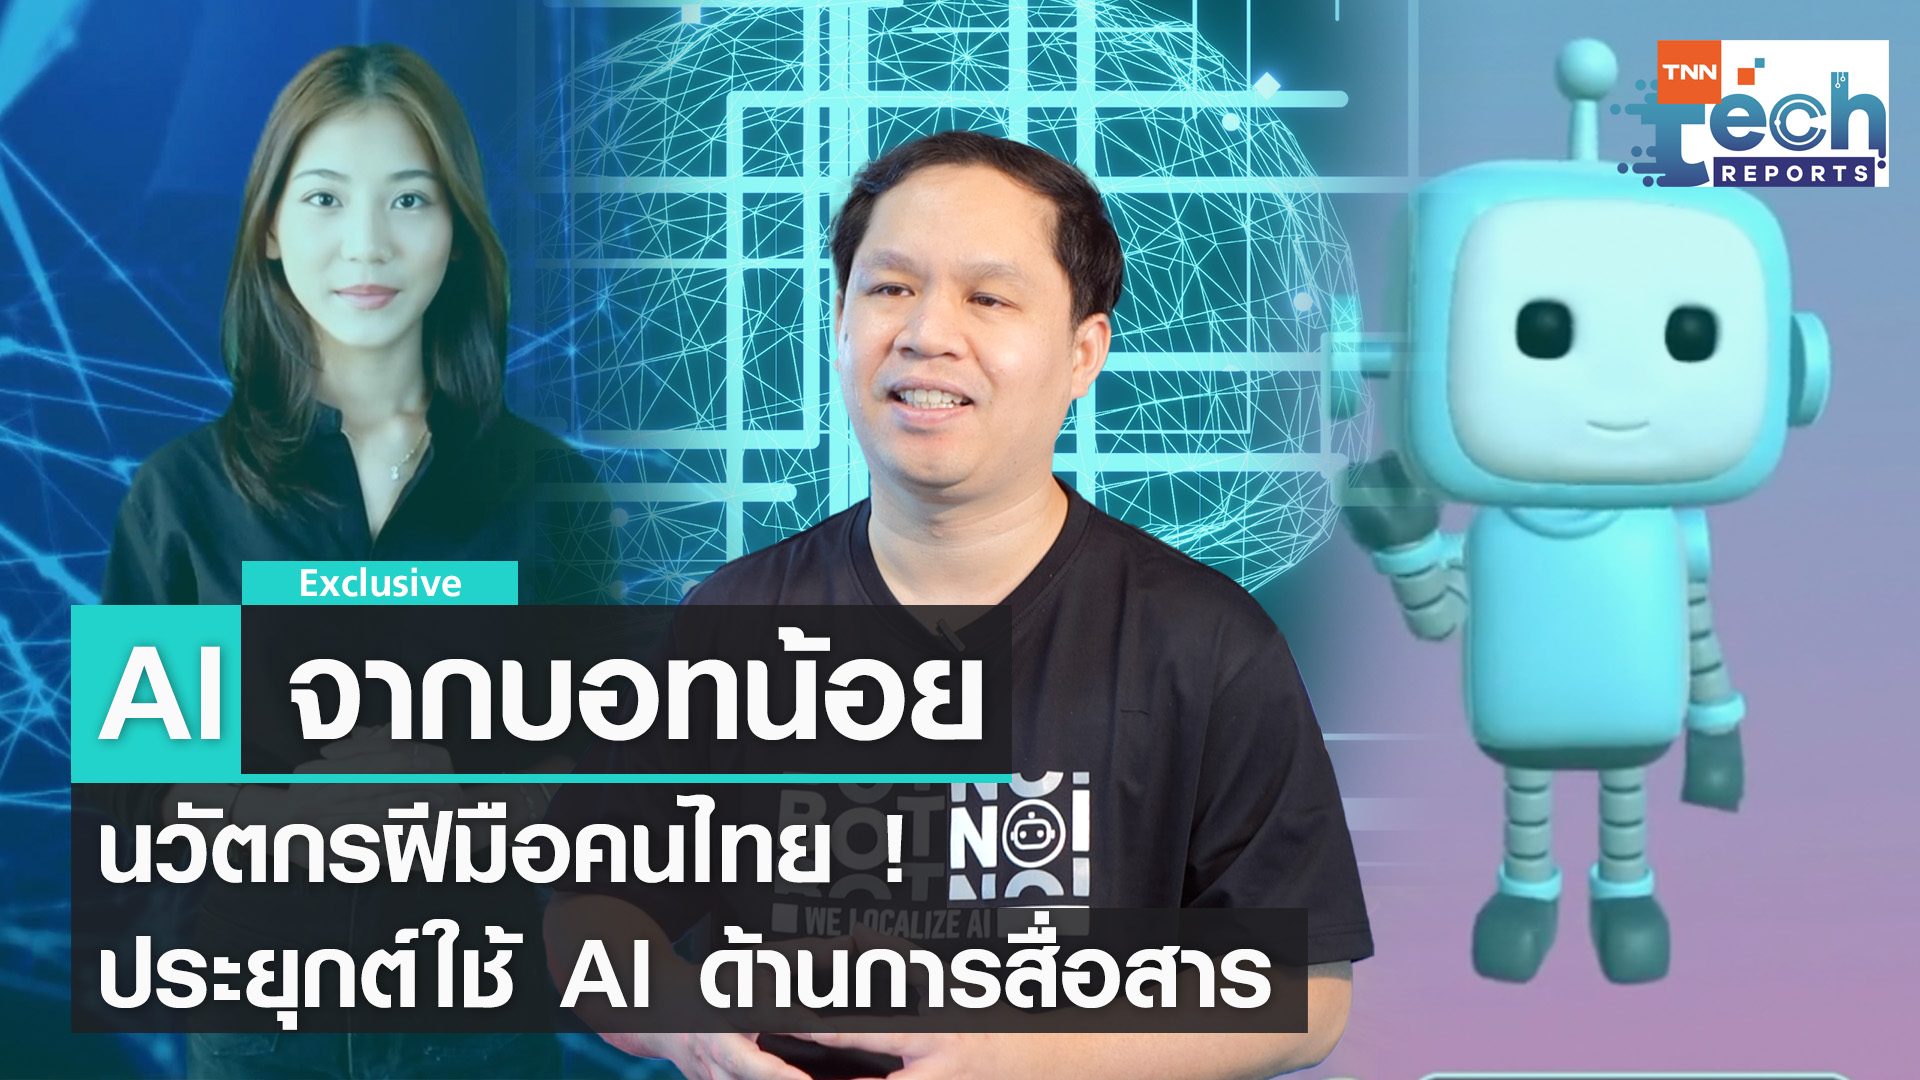 ส่อง AI ด้านการสื่อสาร ฝีมือนักพัฒนาไทยจาก BOTNOI Group | TNN Tech Reports